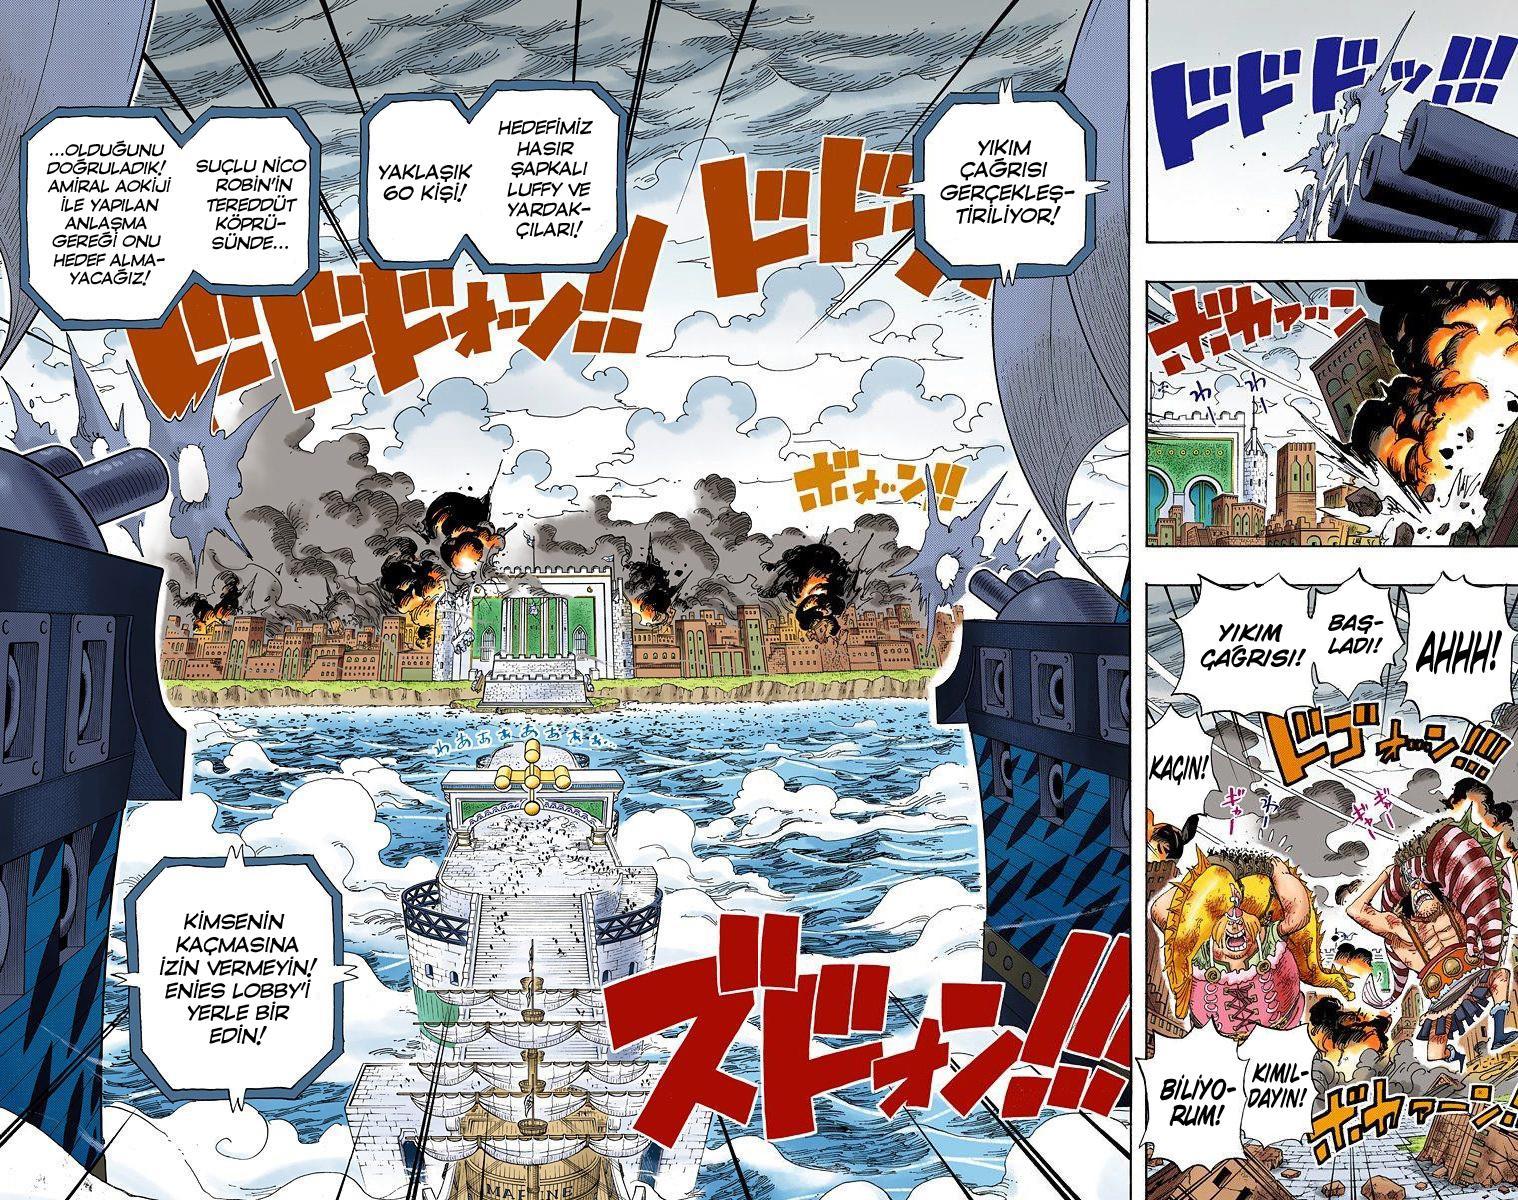 One Piece [Renkli] mangasının 0421 bölümünün 3. sayfasını okuyorsunuz.